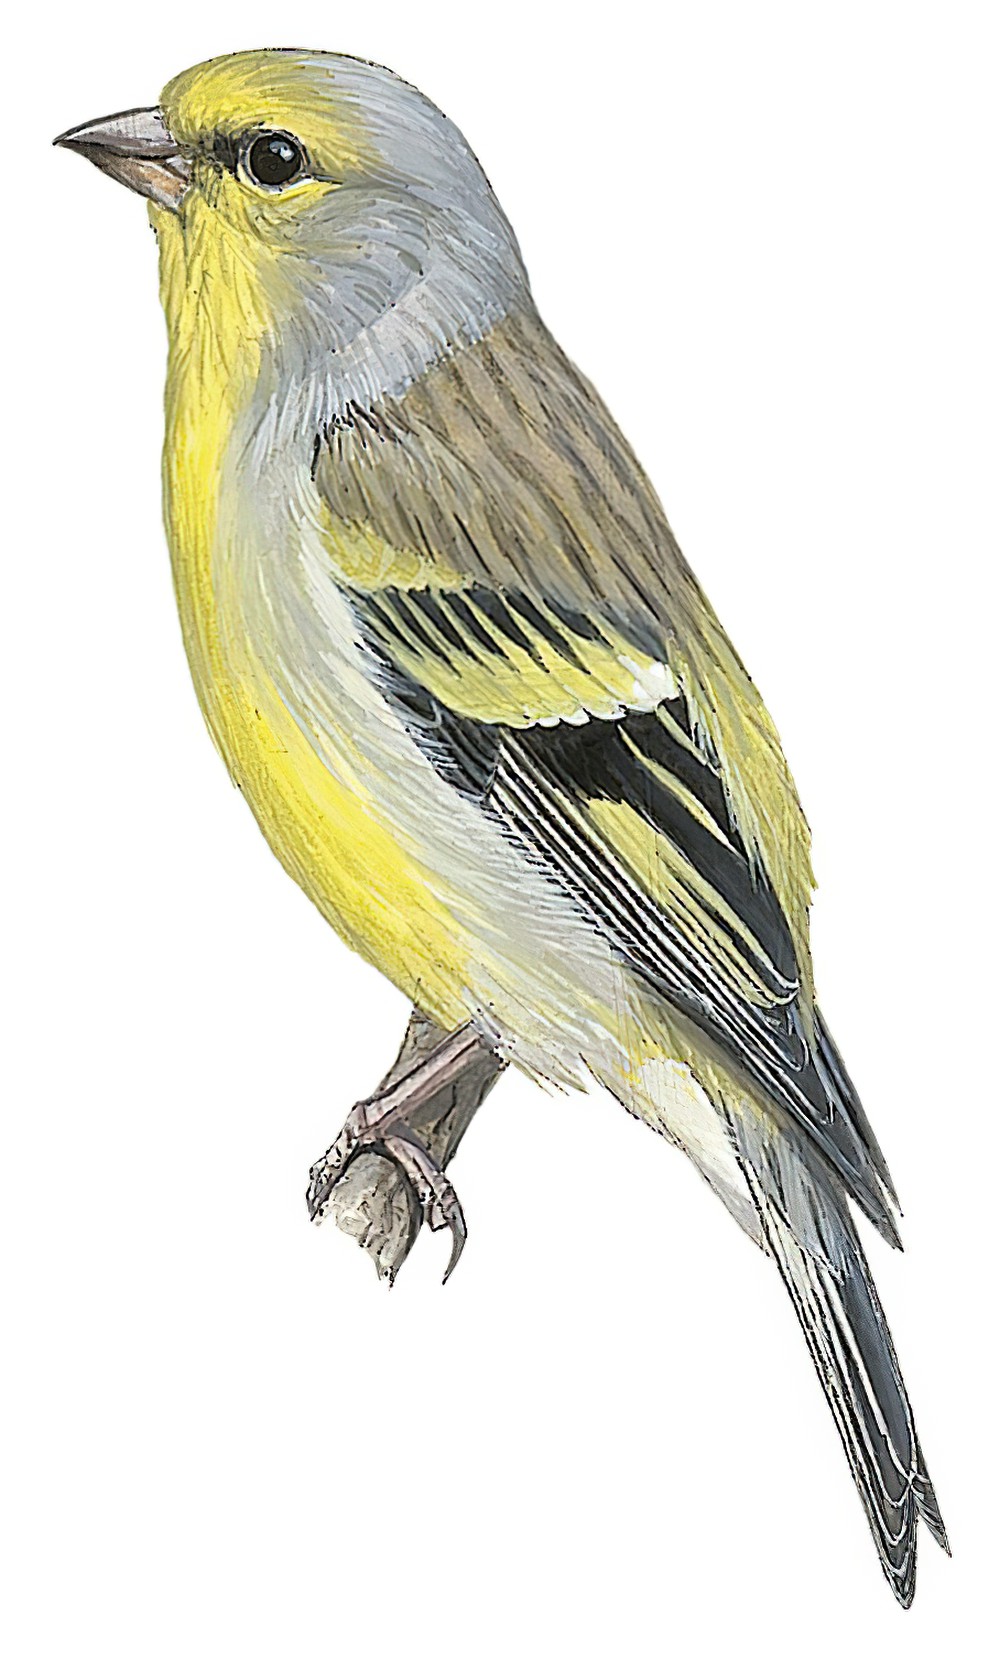 Corsican Finch / Carduelis corsicana